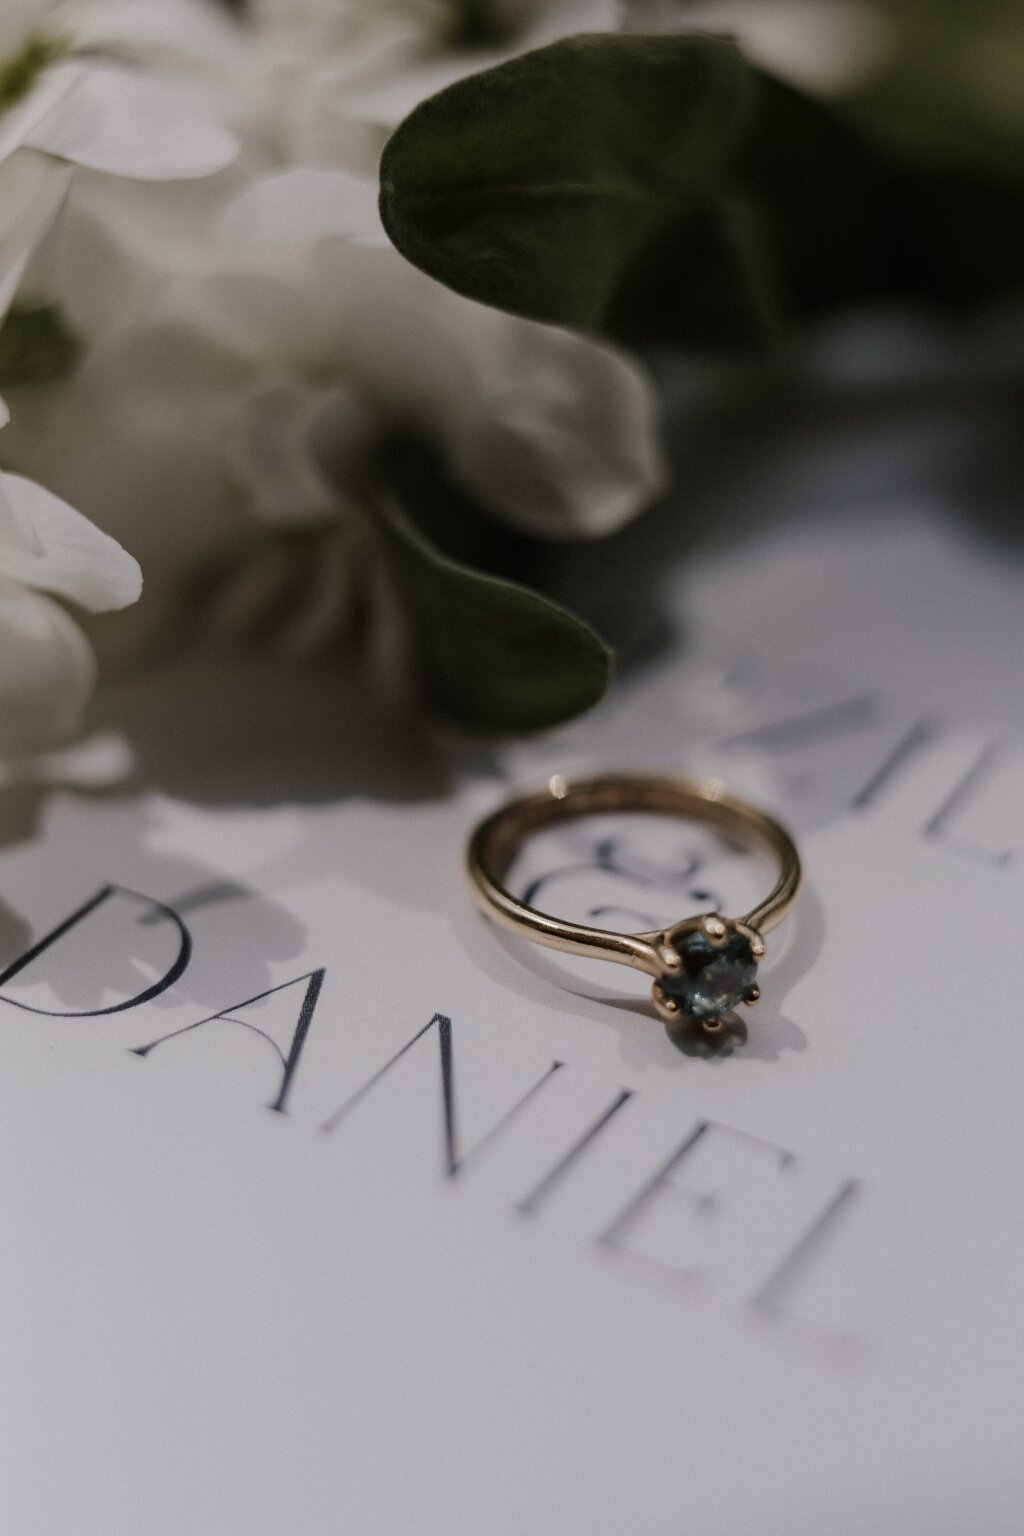 Ein goldener Verlobungsring mit eingefasstem blauen Stein liegt auf einem Stück Papier. Zu erkennen ist der Name Daniel. Neben dem Ring lassen sich Teile einer Blume erkennen.